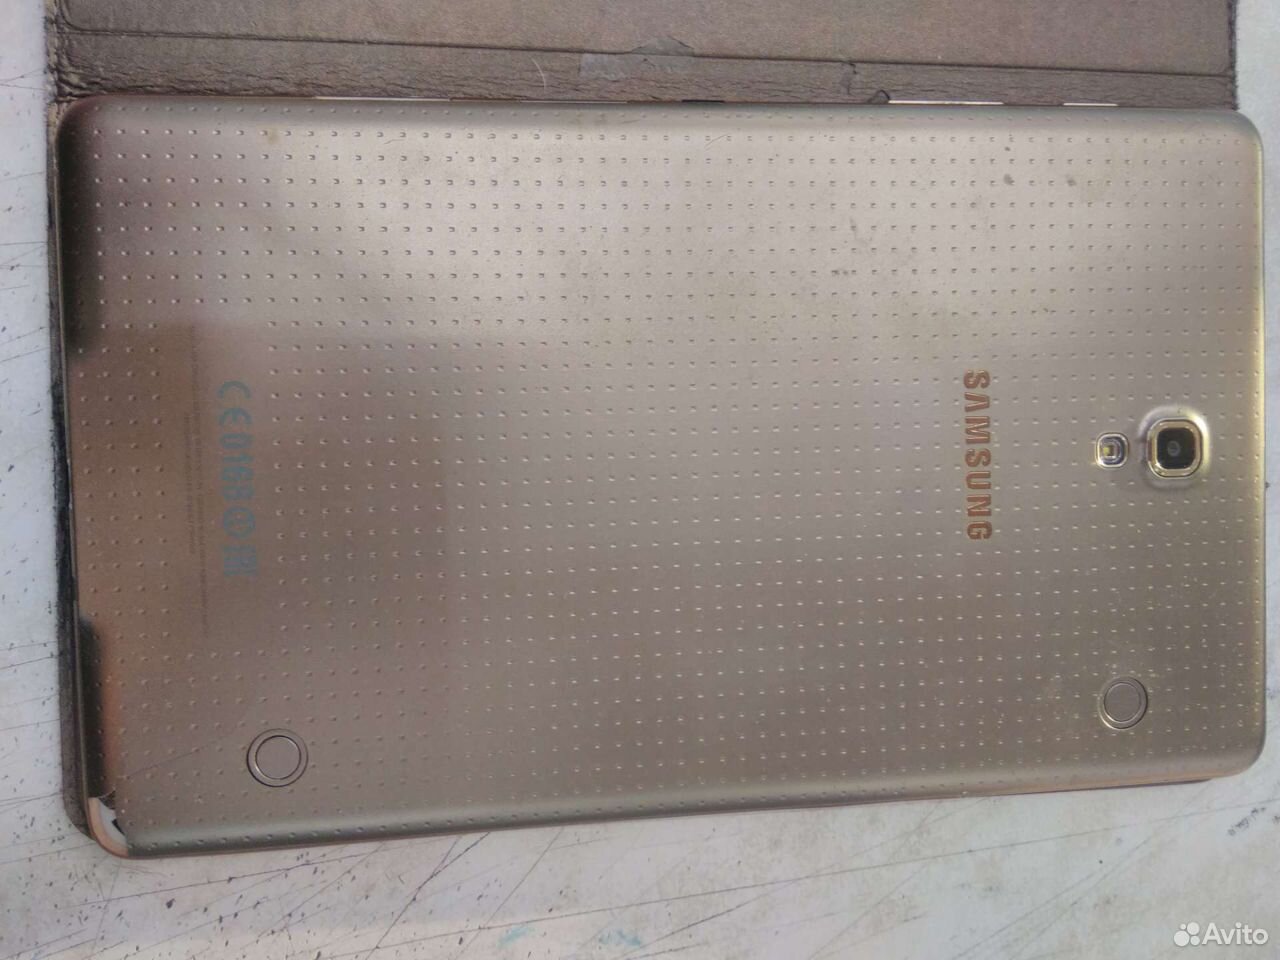 Планшет Samsung SM-T705 89027630763 купить 5